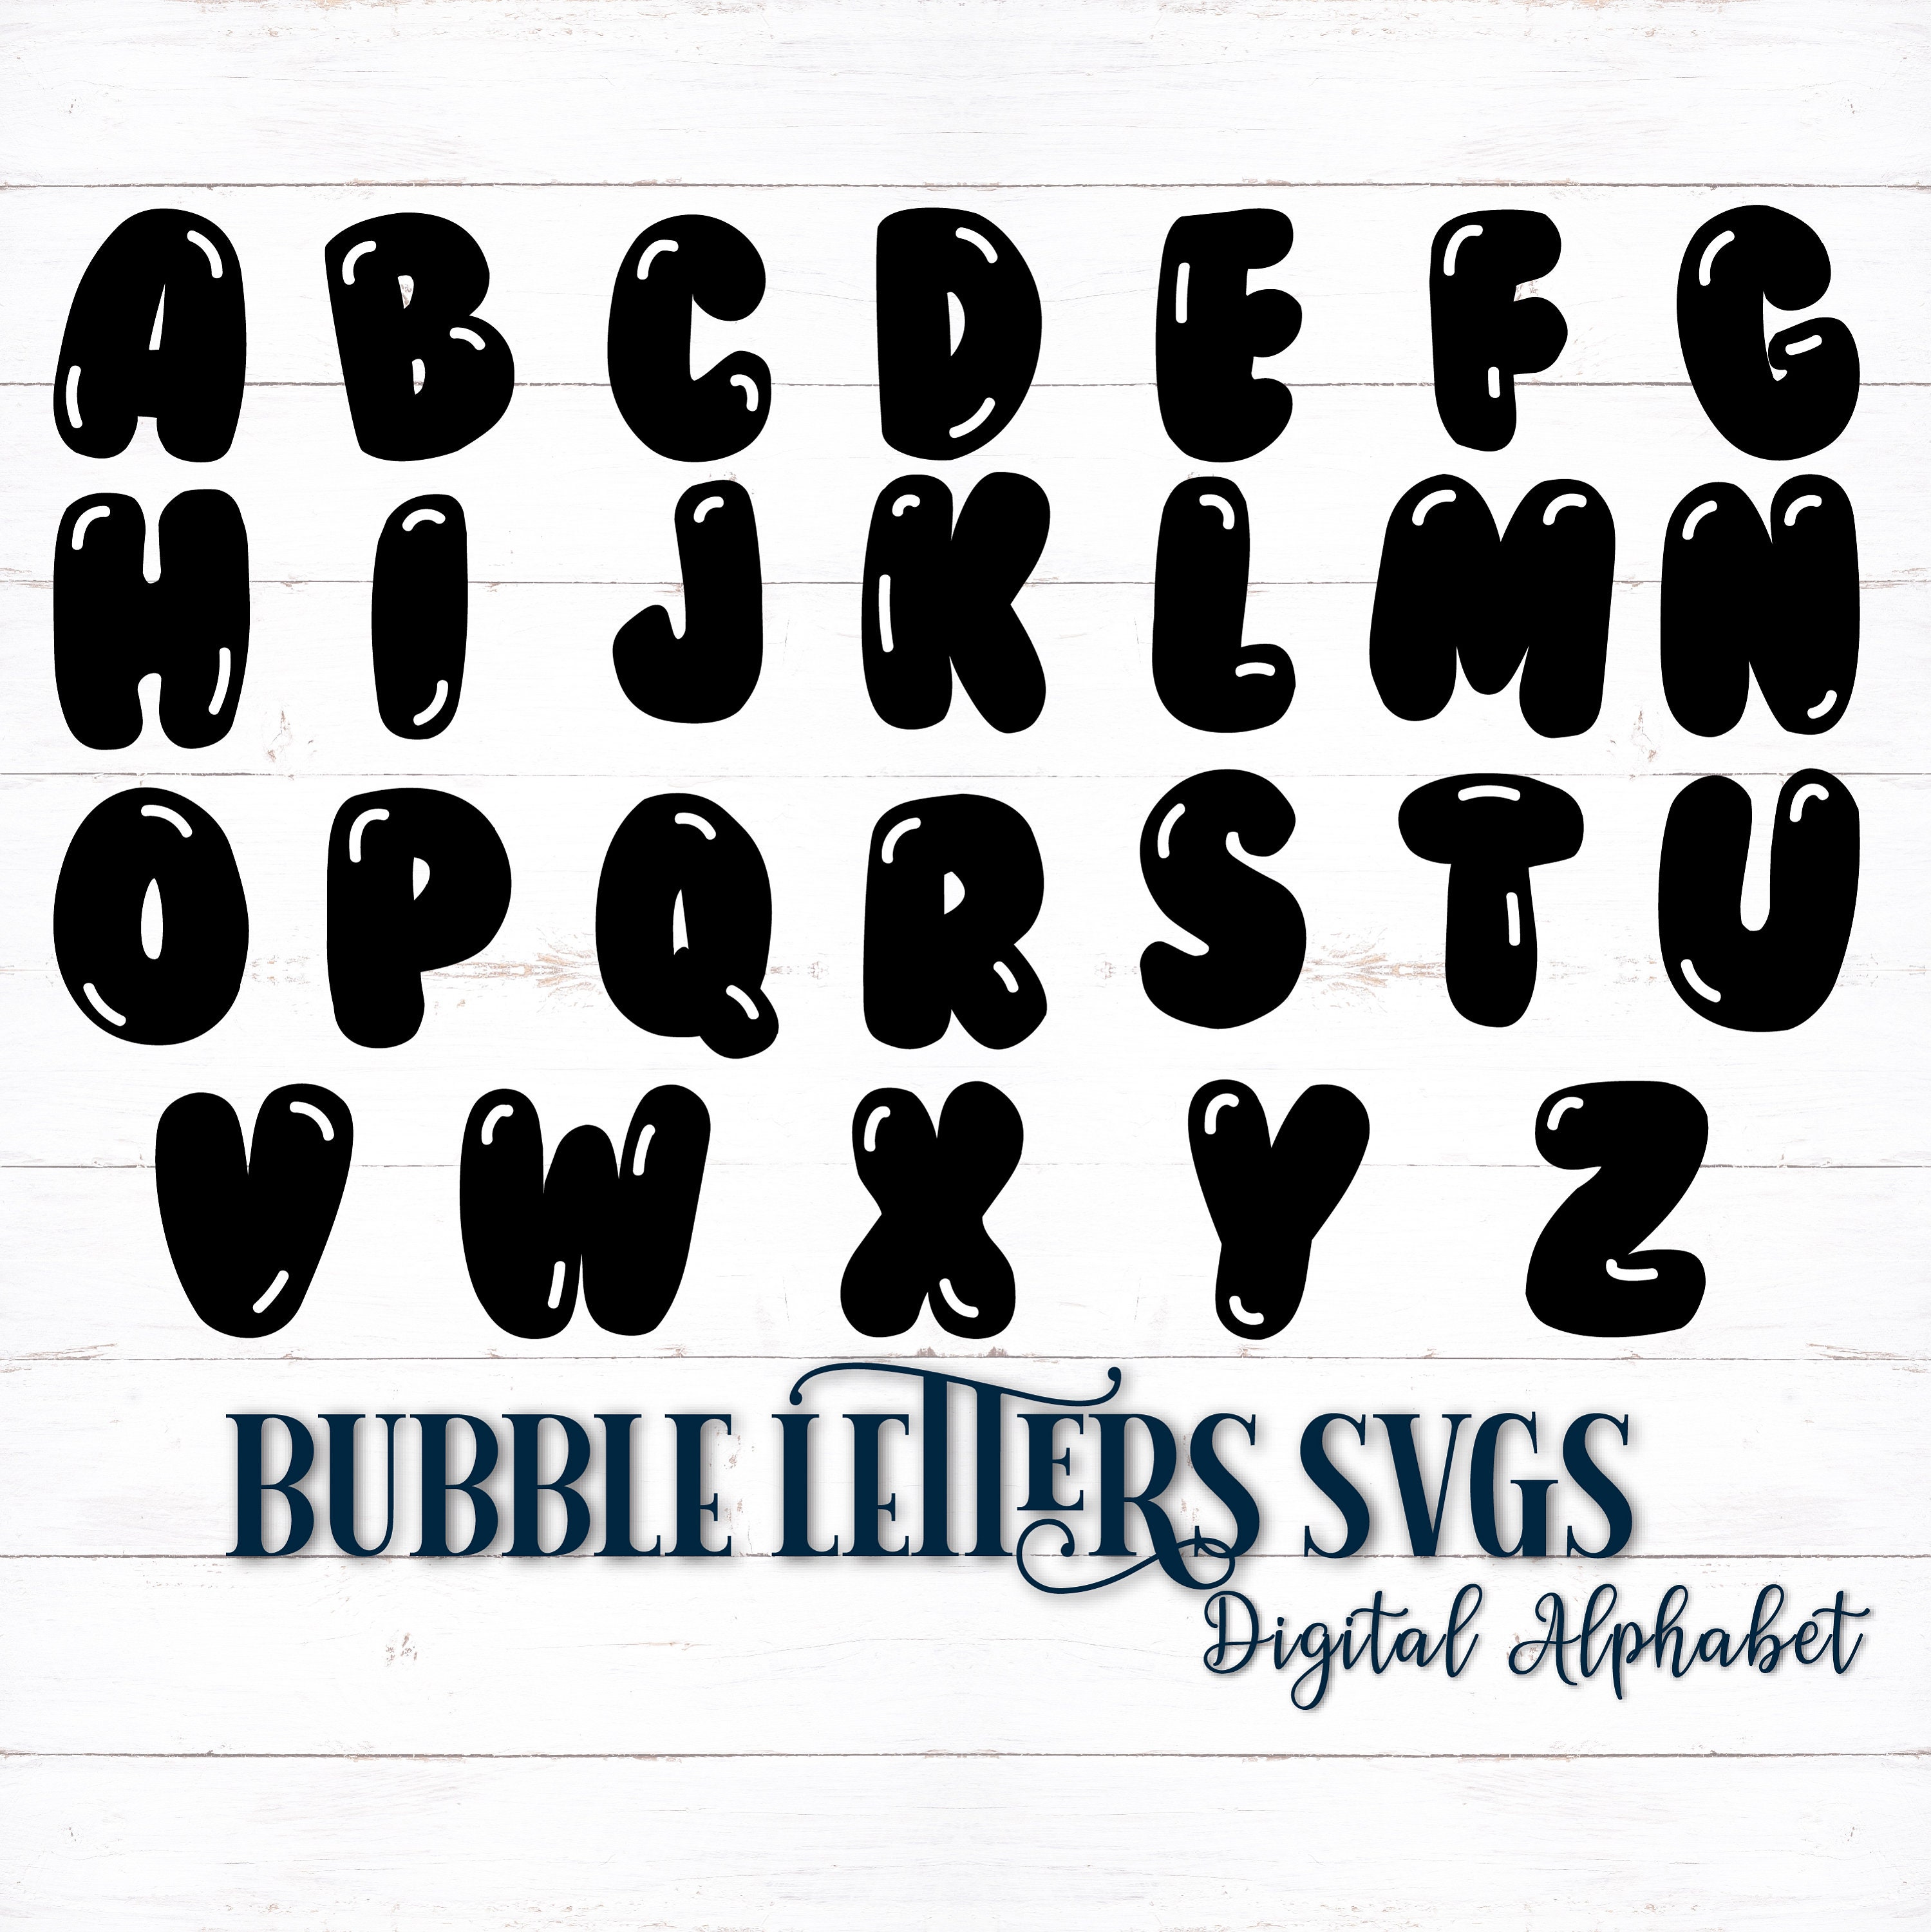 printable digital alphabet letters bubble letters bubble etsy